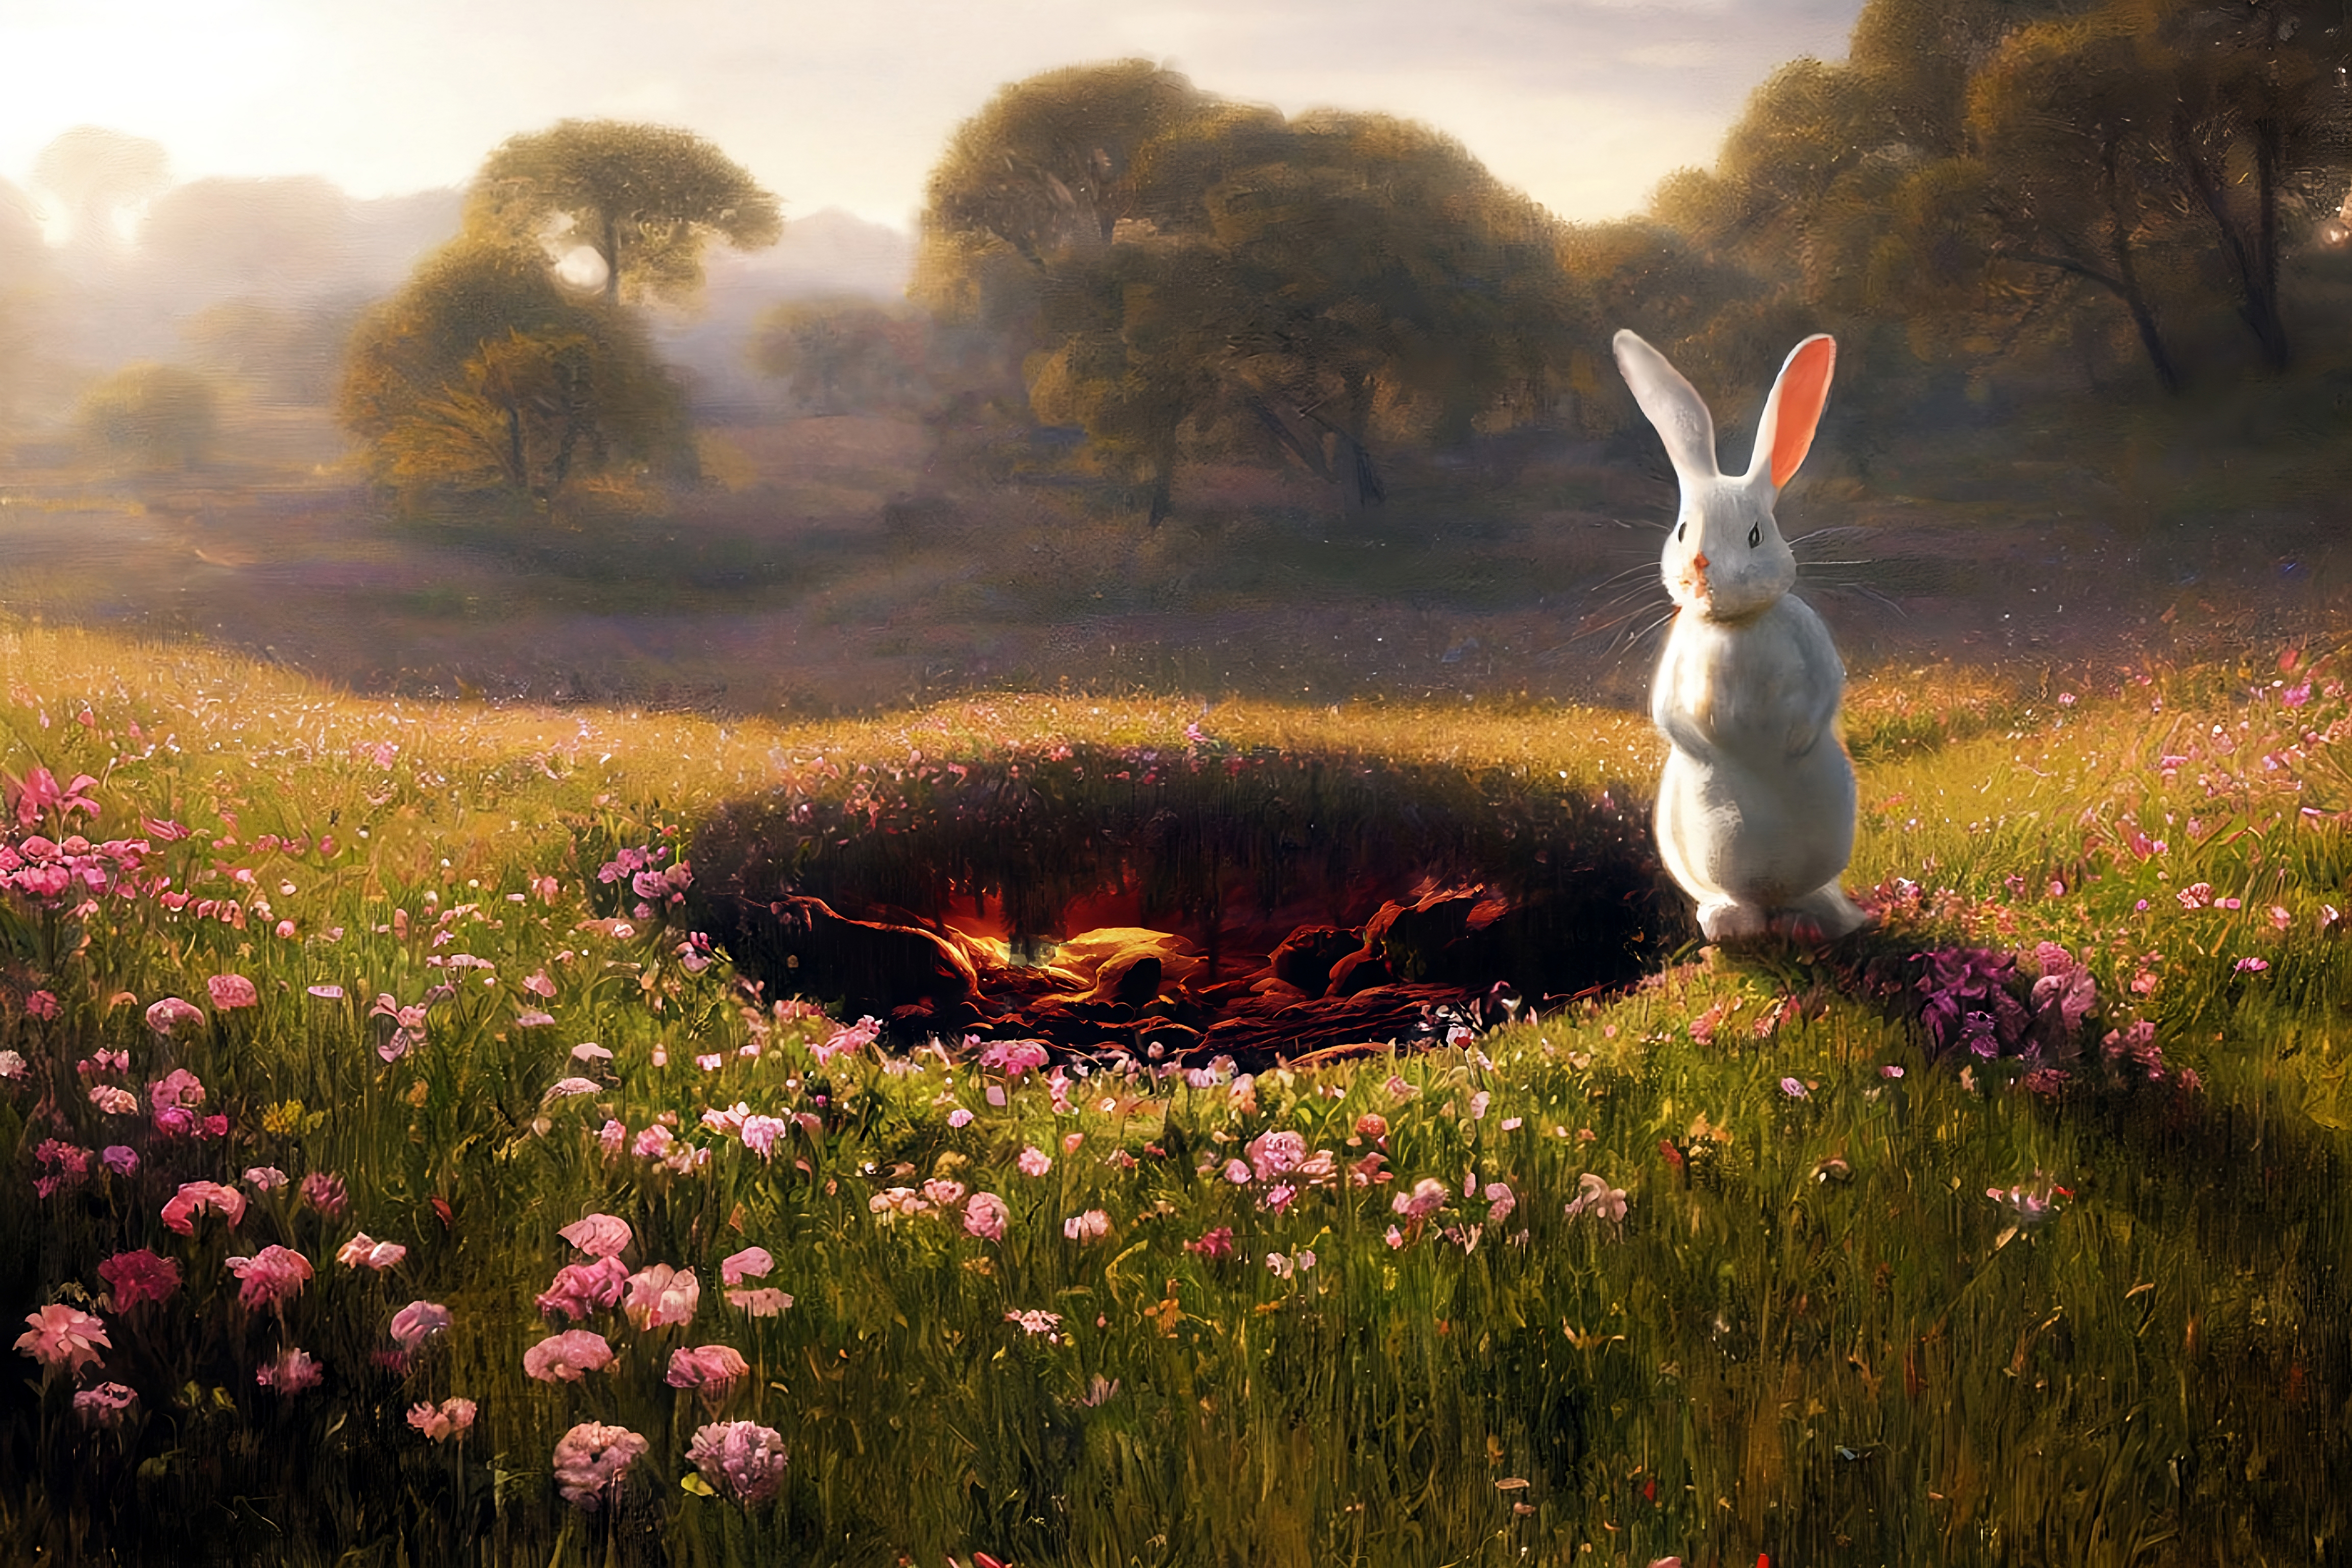 Nft Alice the Rabbit